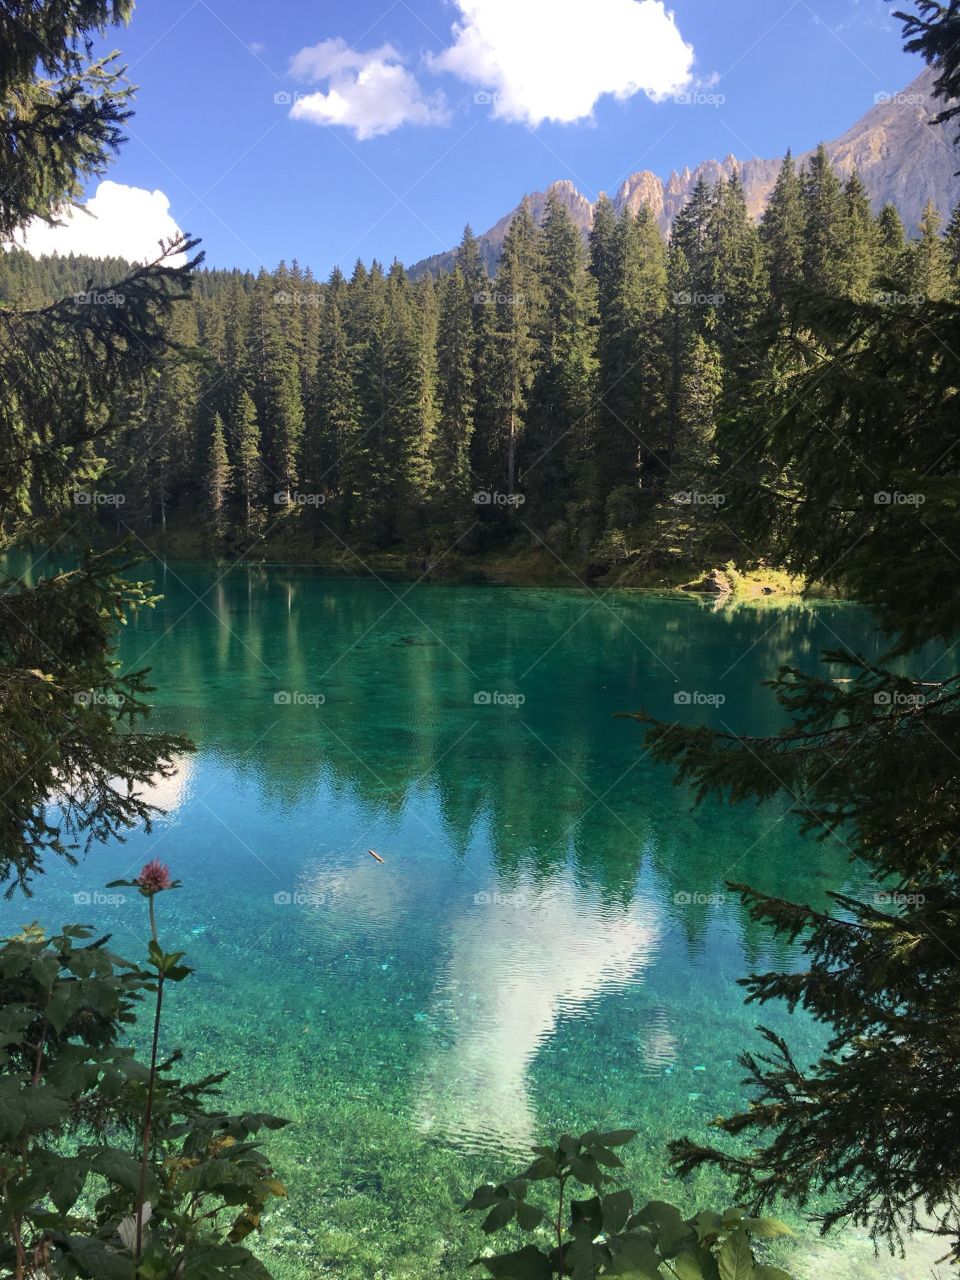 The wonderful Lago di Carezza in Trentino Alto Adige